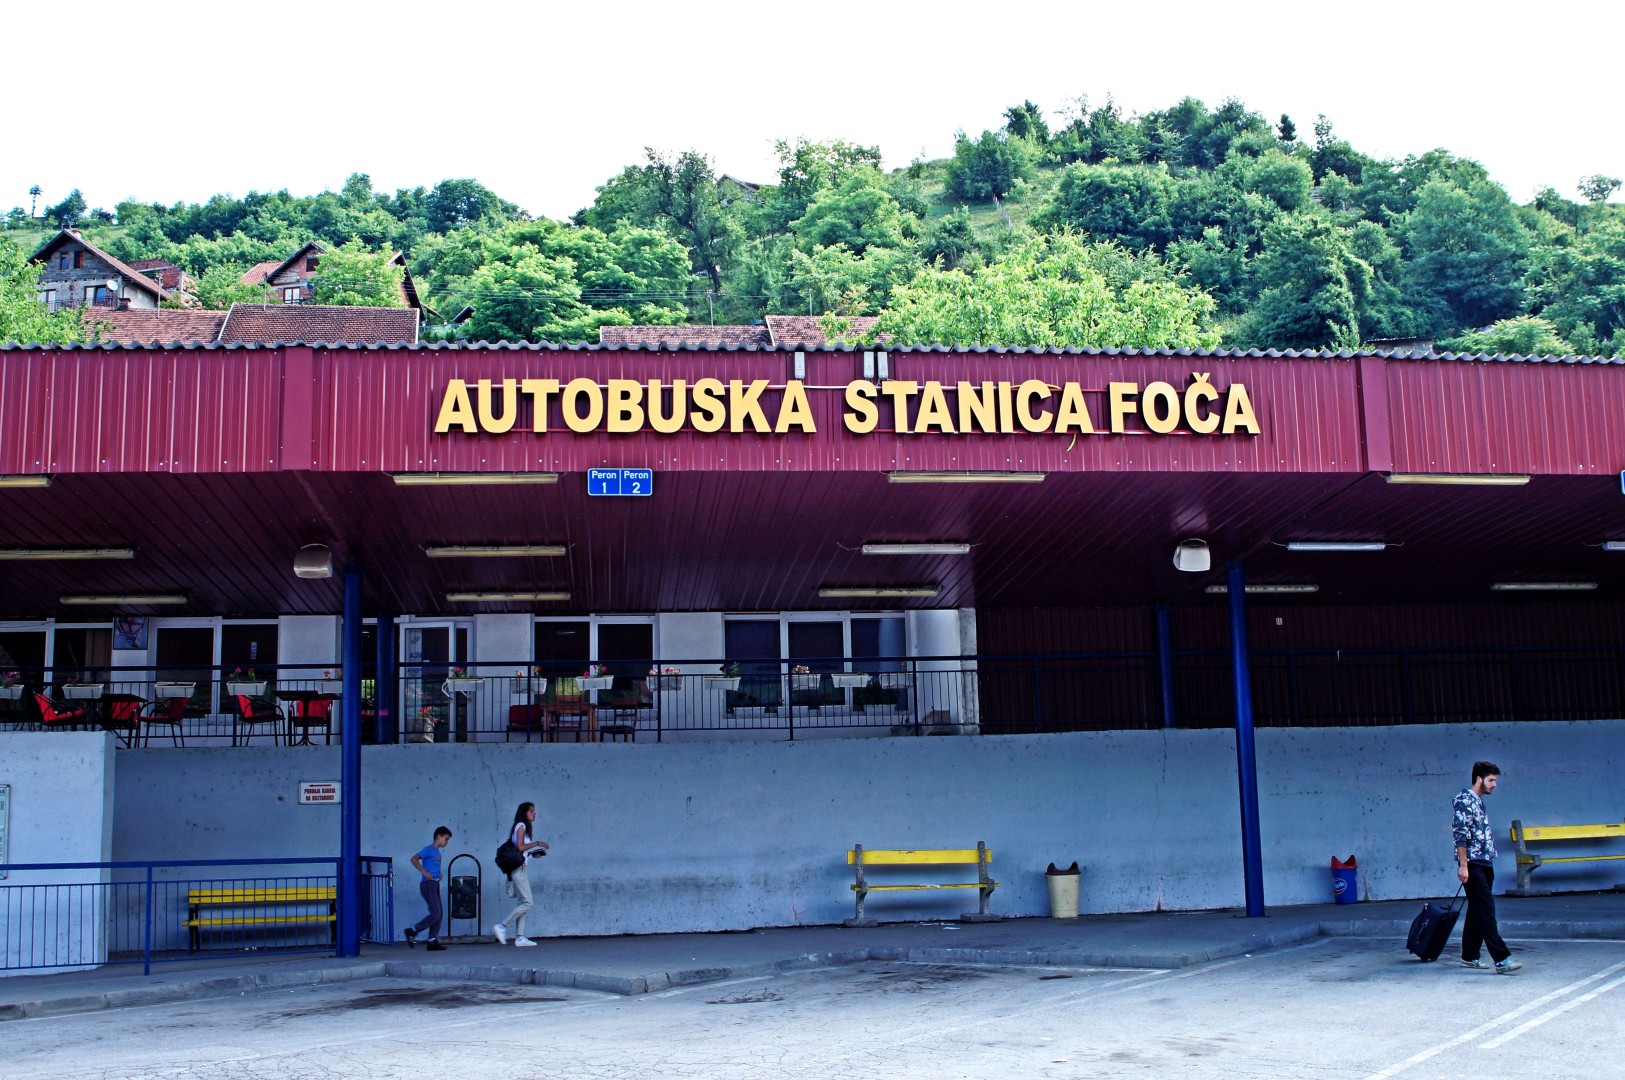 Stacja autobusowa Foca